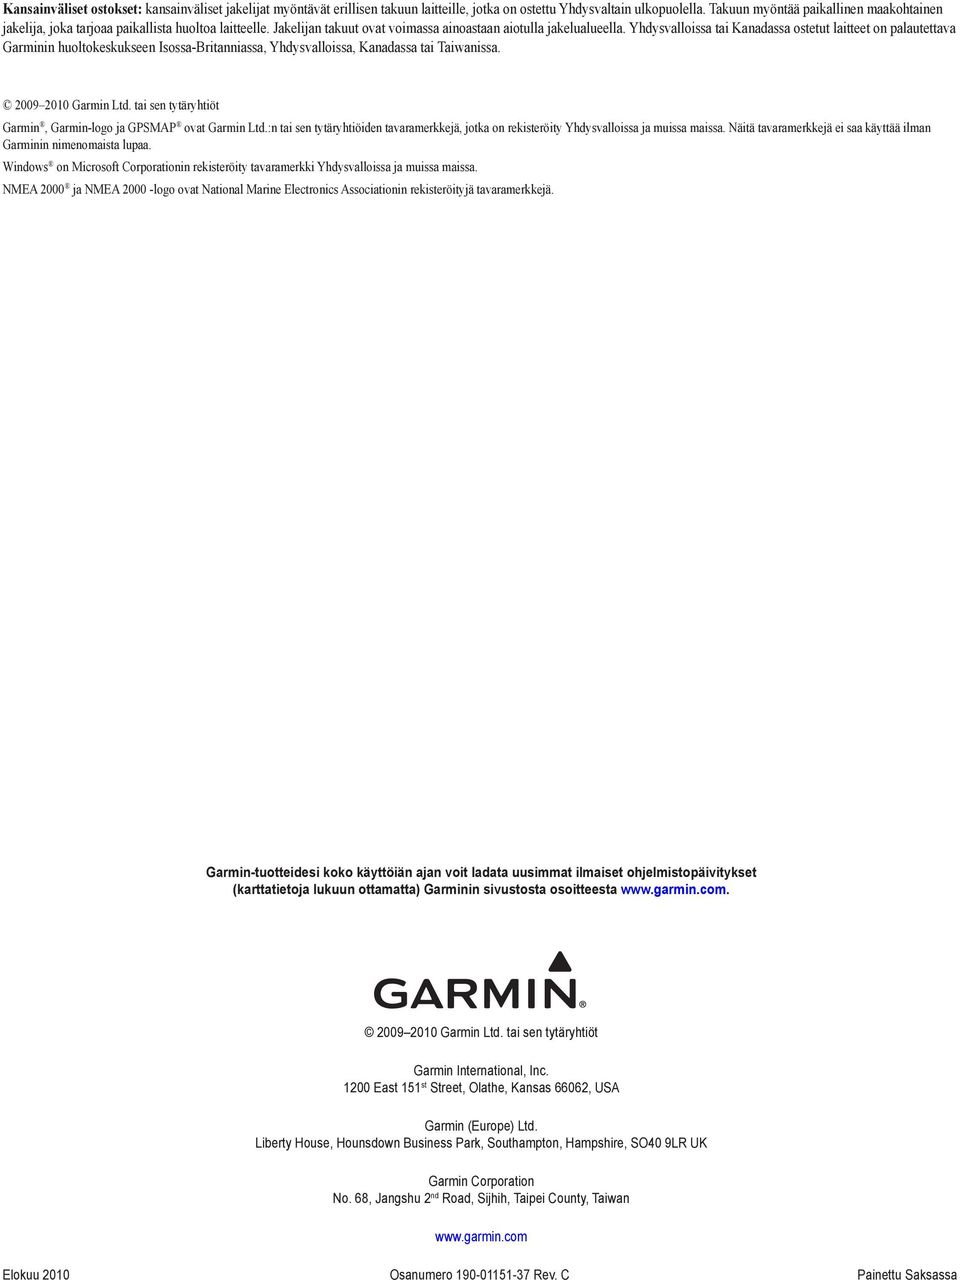 Yhdysvalloissa tai Kanadassa ostetut laitteet on palautettava Garminin huoltokeskukseen Isossa-Britanniassa, Yhdysvalloissa, Kanadassa tai Taiwanissa. 2009 2010 Garmin Ltd.